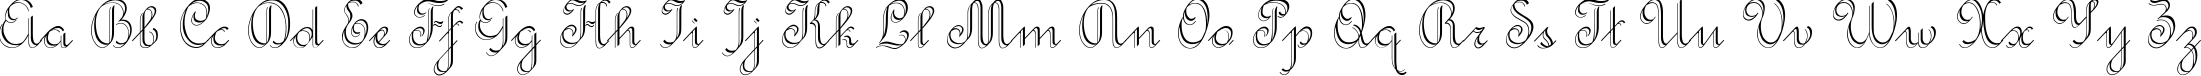 Пример написания английского алфавита шрифтом Rondo Twin Thin